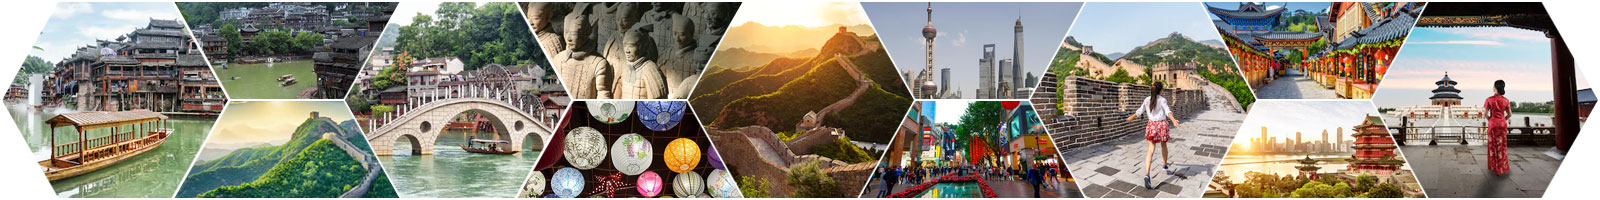 Tour du lịch Trung Quốc 2021 - Giá trọn gói visa từ TPHCM